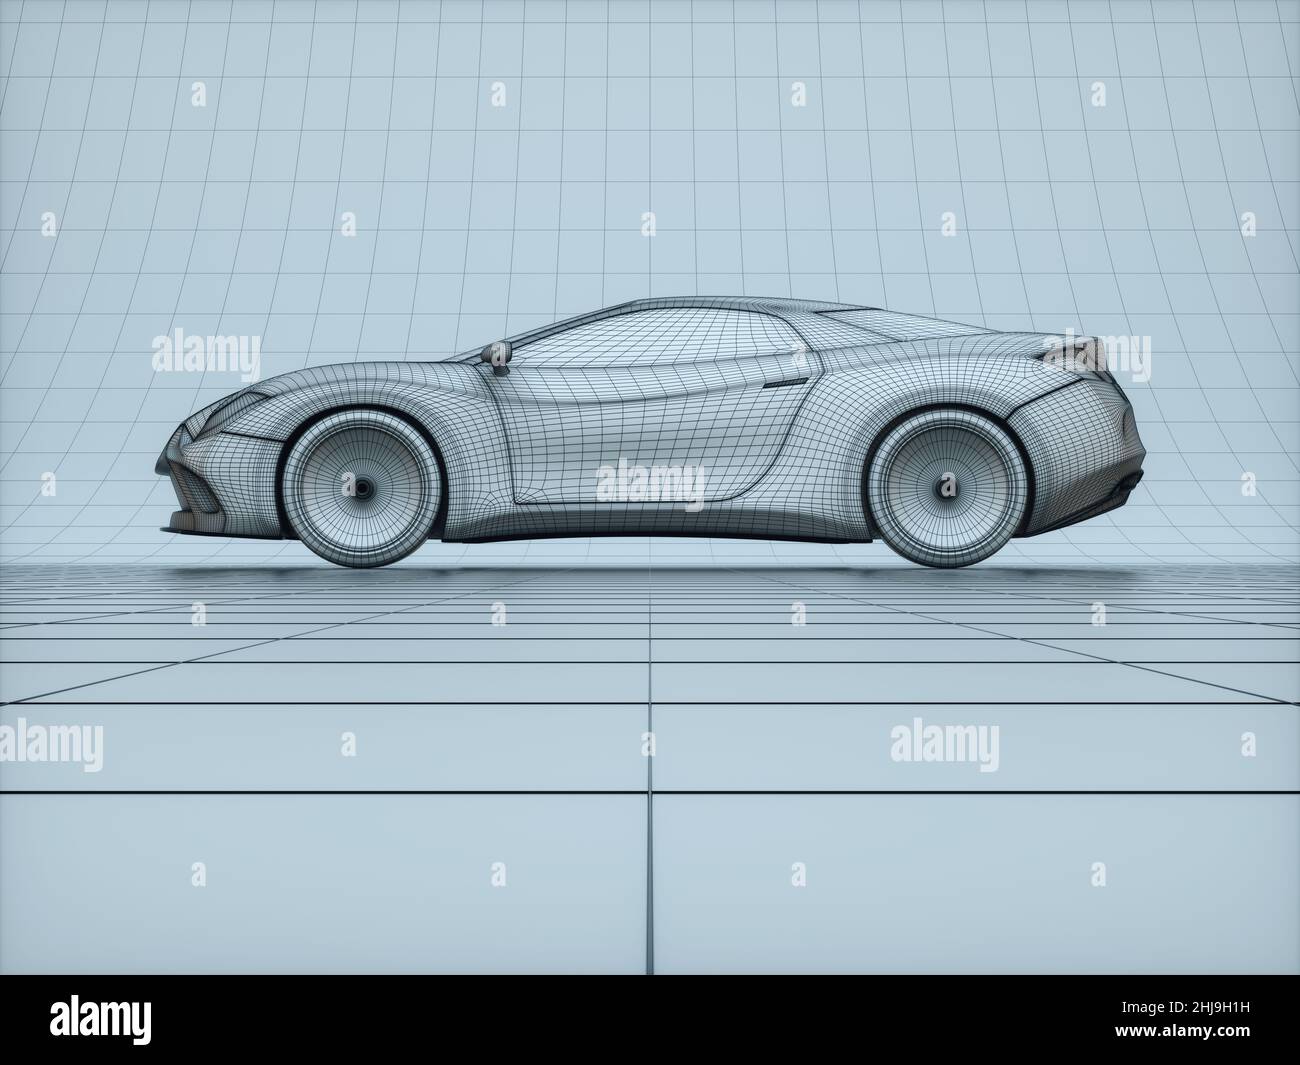 Concepto de Blueprint de coche deportivo fabricado en software 3D. Imagen conceptual de prototipos y ensayos aerodinámicos. Foto de stock